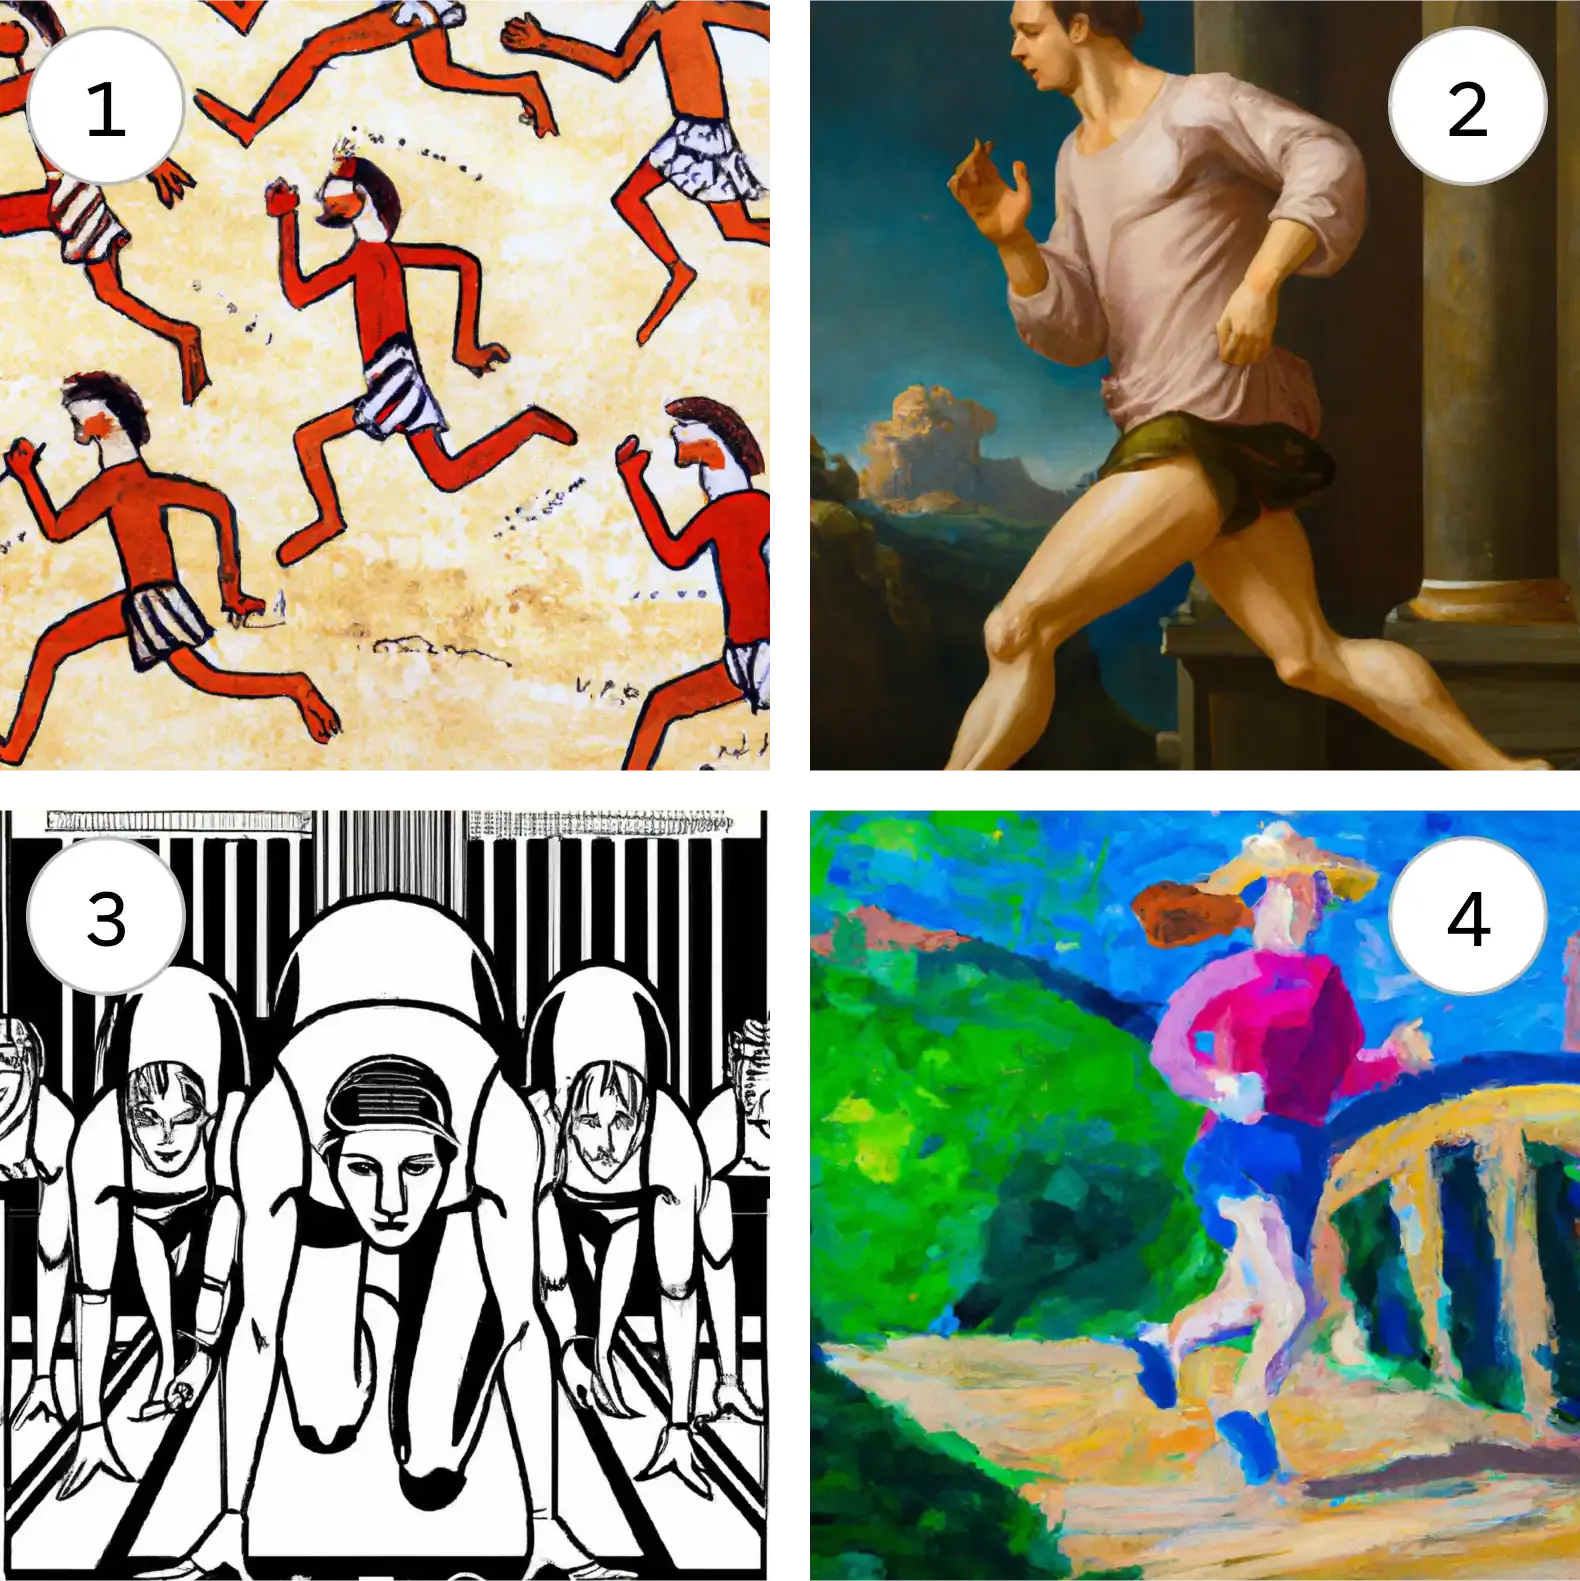 Quatre images différentes de personnes en cours d’exécution, rendues dans différents styles artistiques.